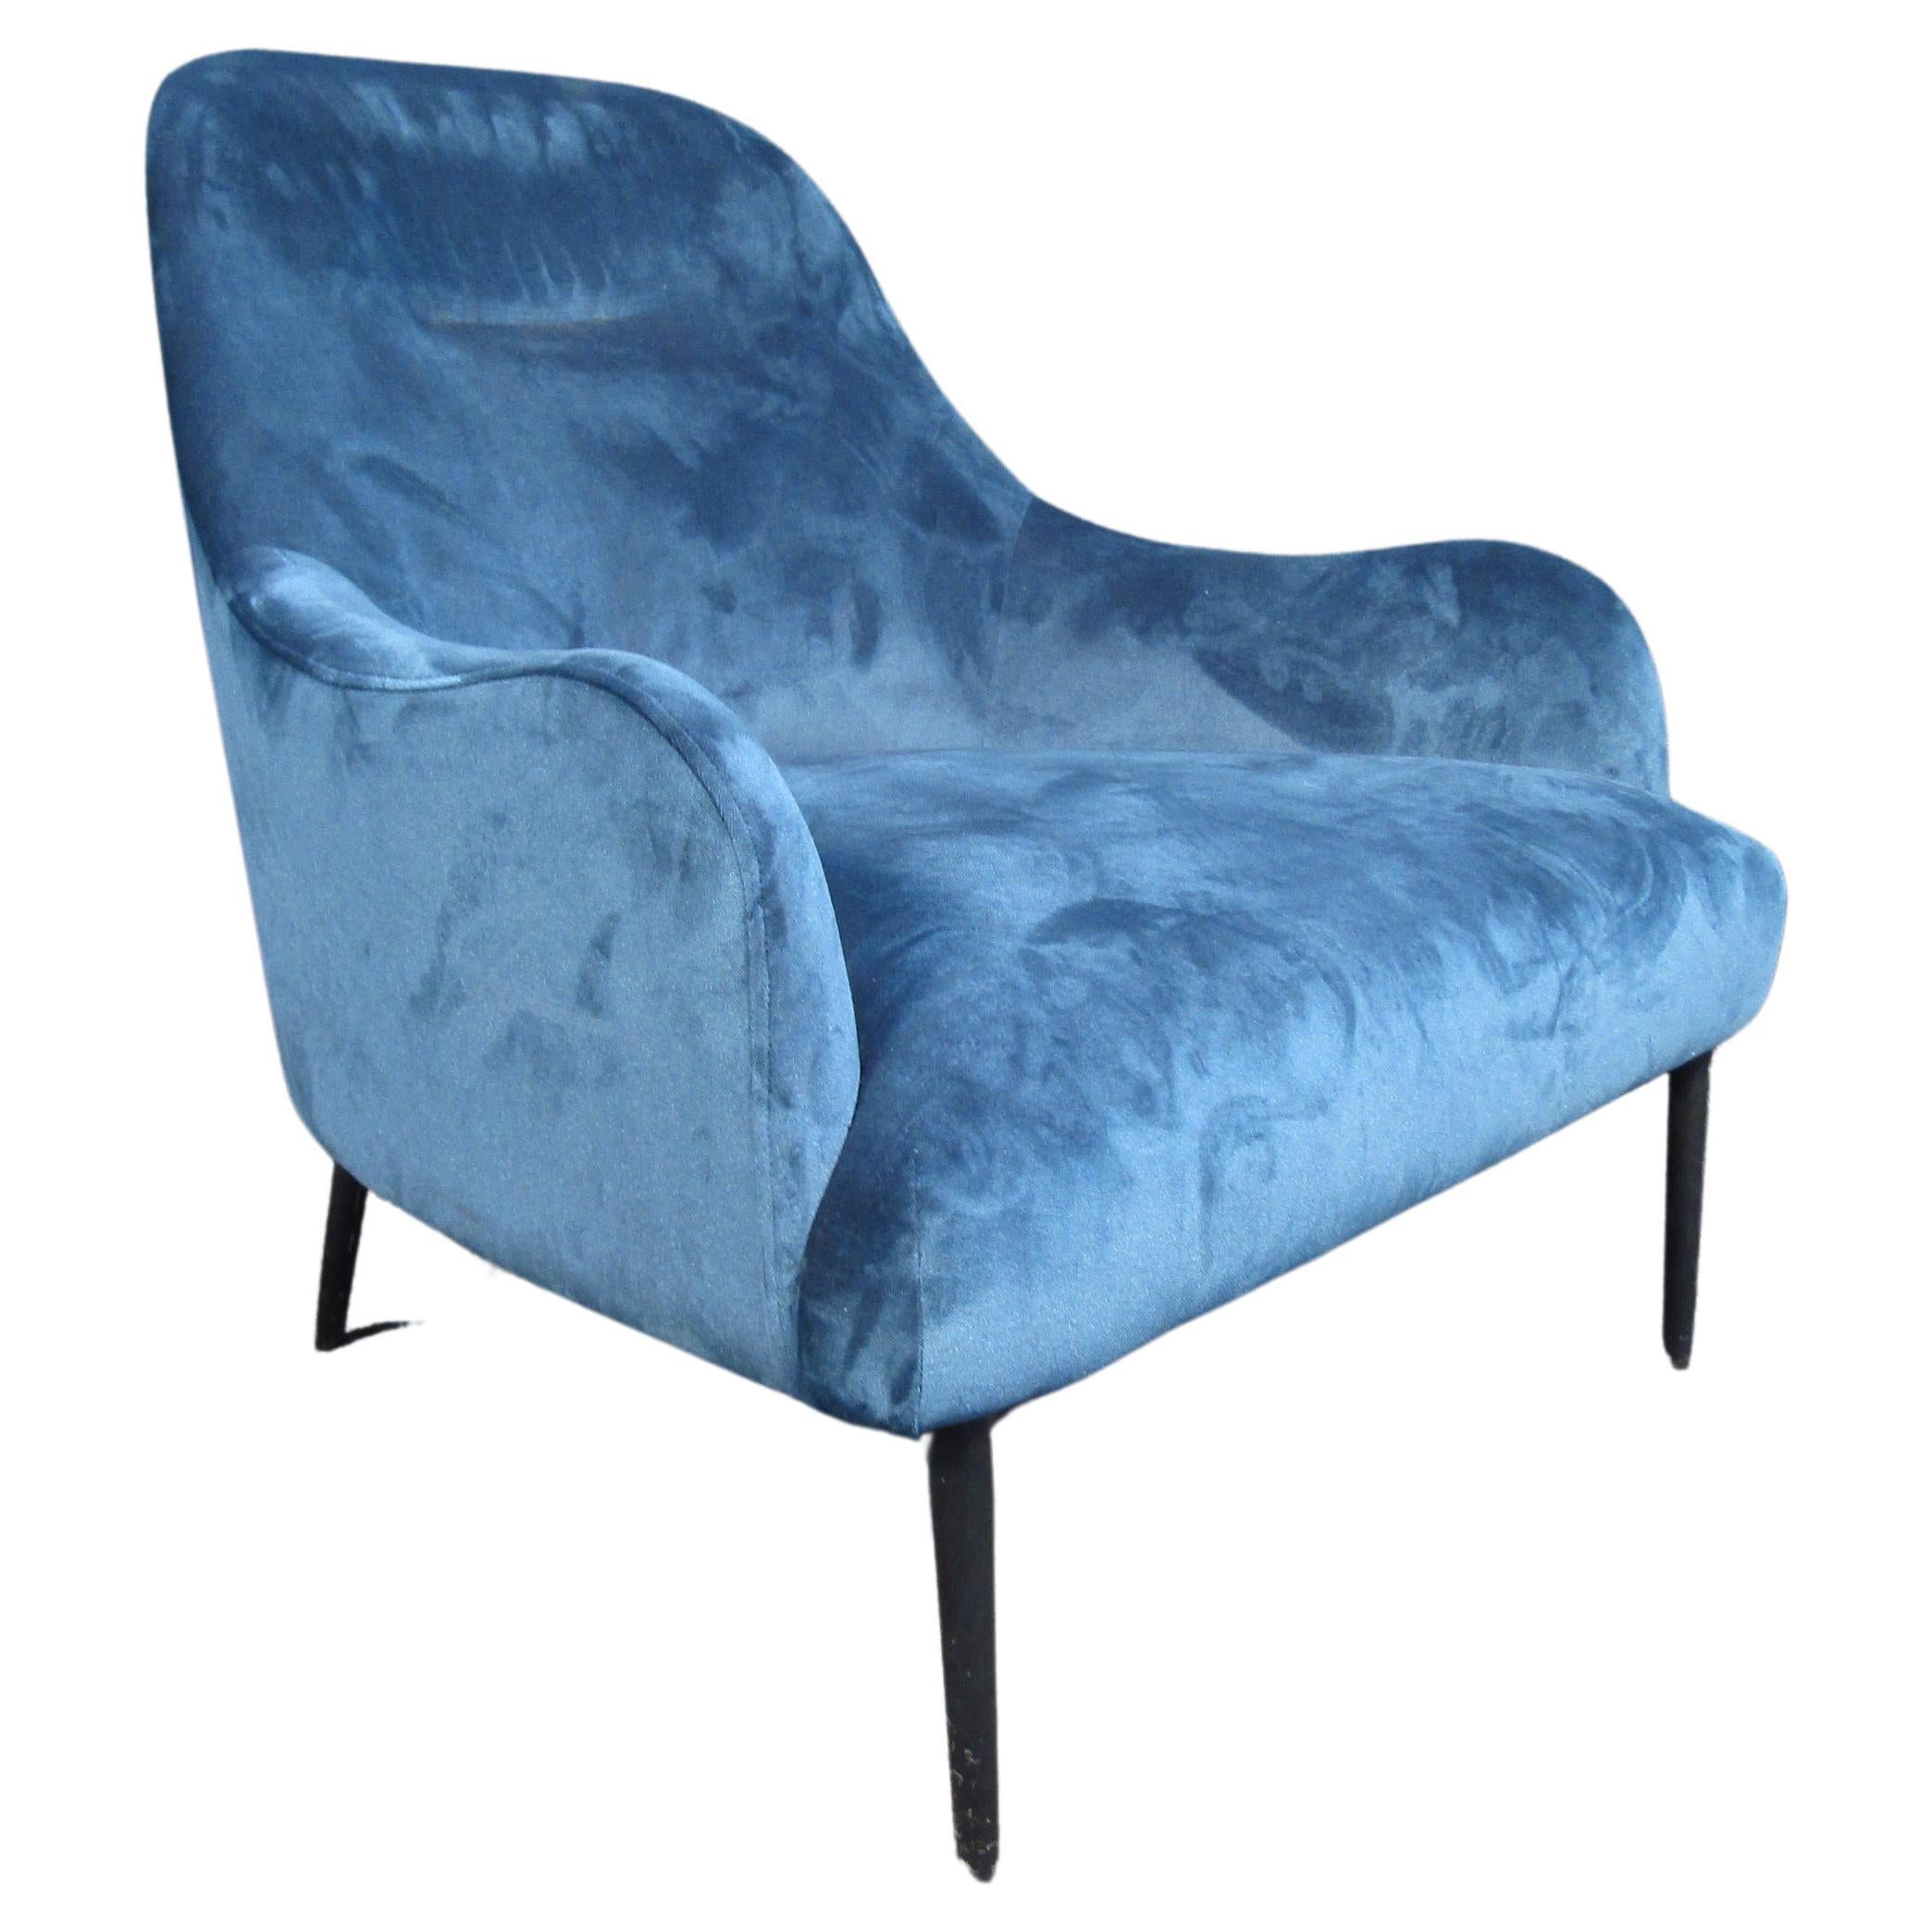 Modern Blue Lounge Chair